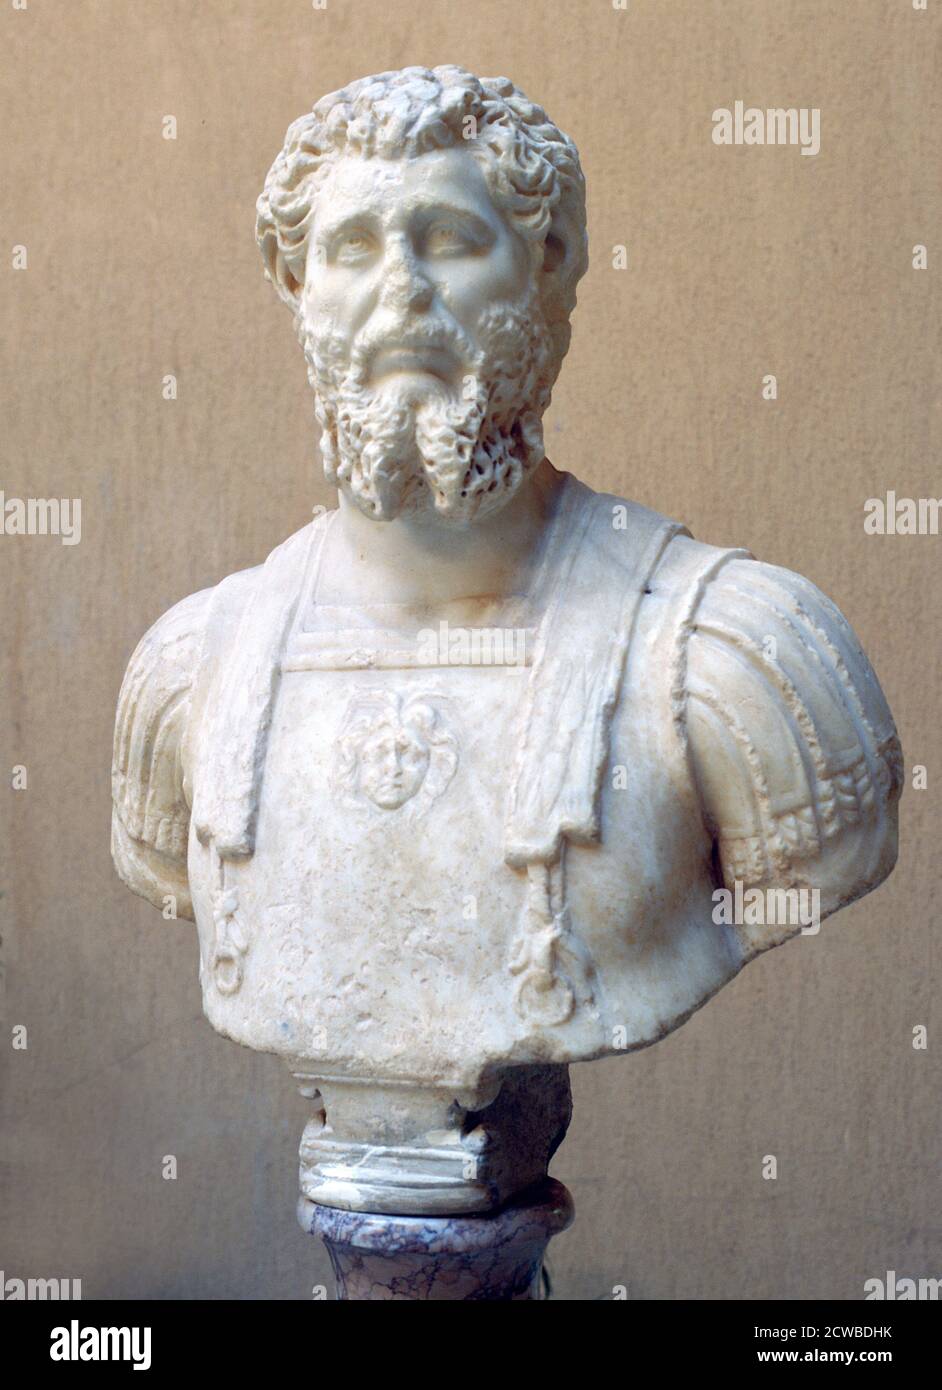 Buste en marbre de l'empereur romain Lucius Septimius Severus. Trouvé au Musée d'Archéologie et ruines romaines, Ostie, Italie. L'artiste est inconnu. Banque D'Images